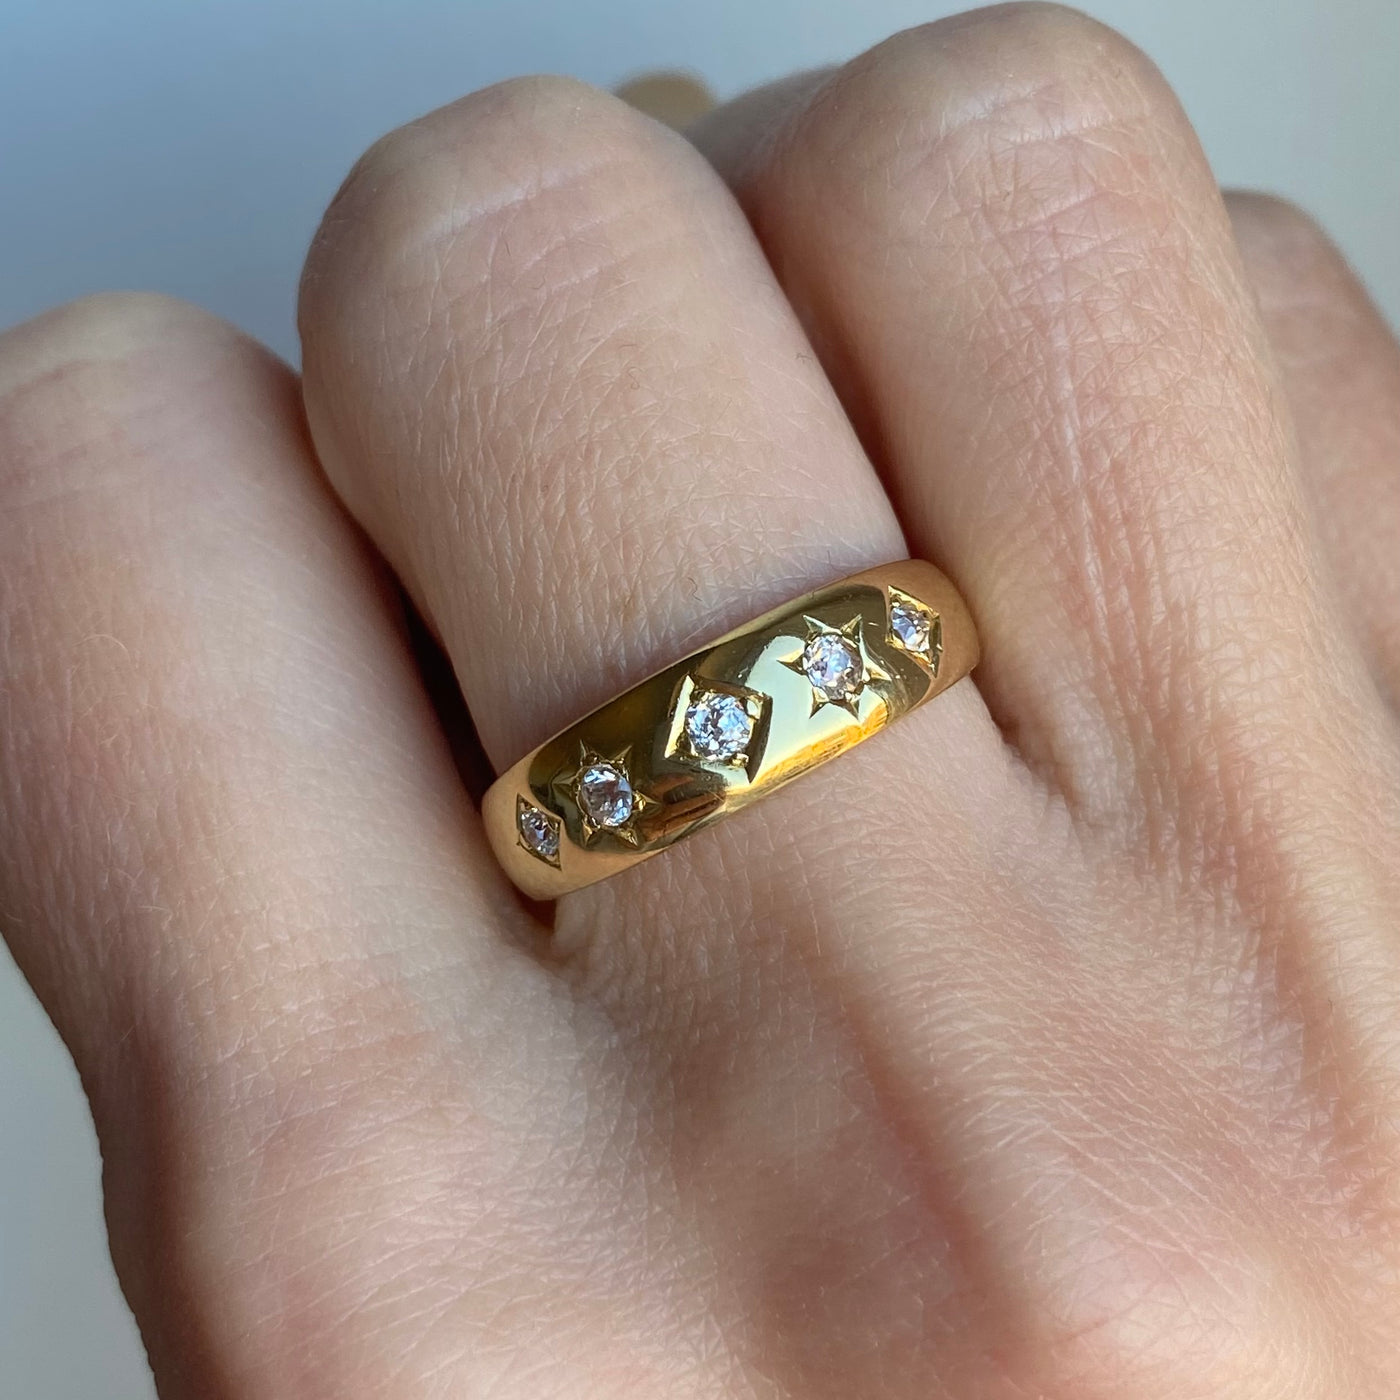 18ct/14ct Gold Starburst Diamond Ring